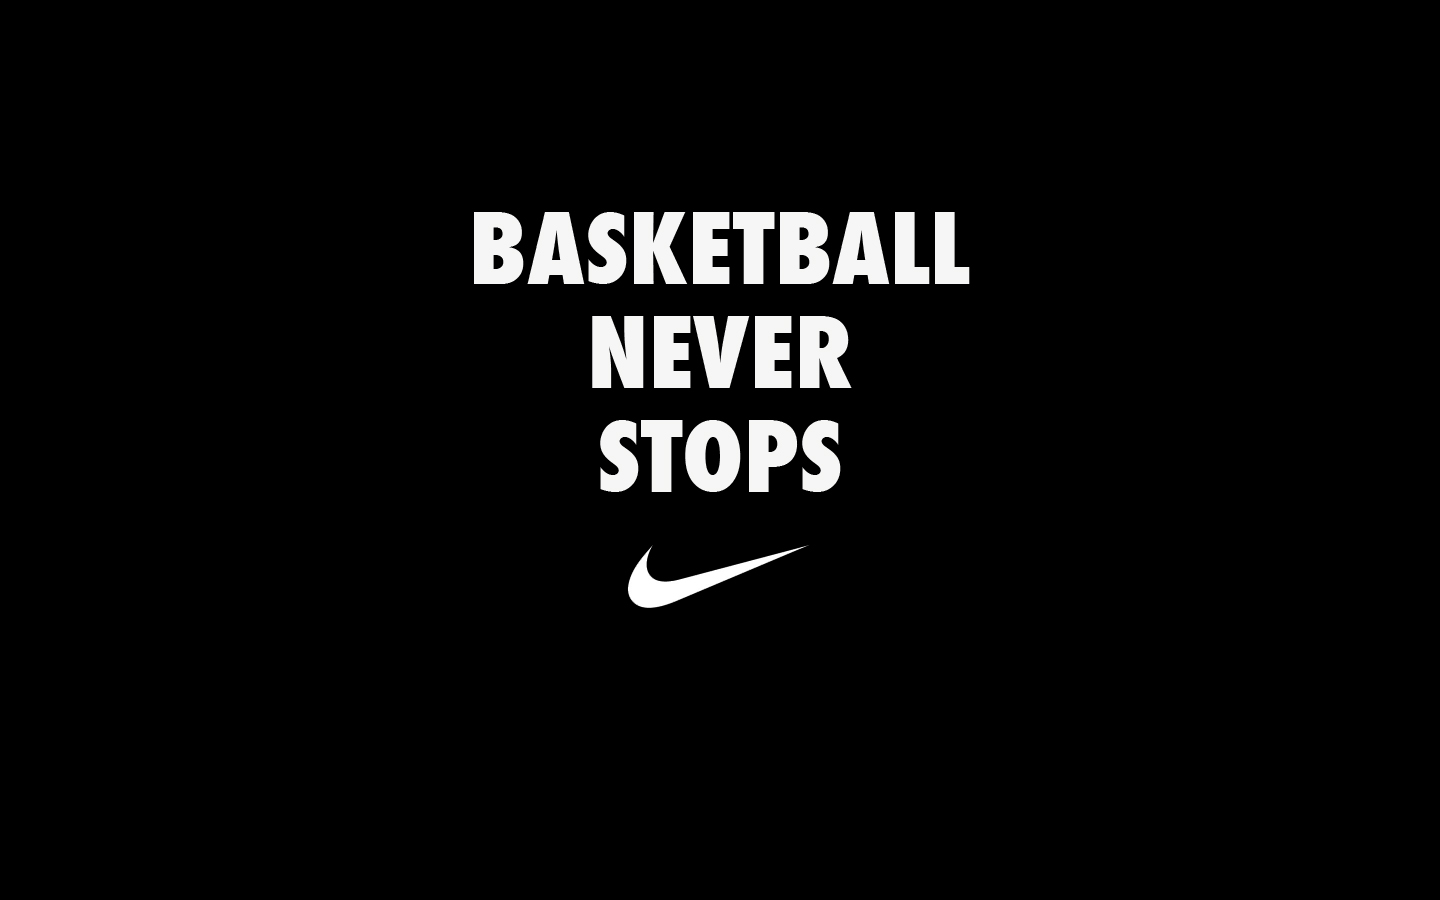 Girls Basketball Logo Images Wallpaper Nike Basketball Never Stops ...